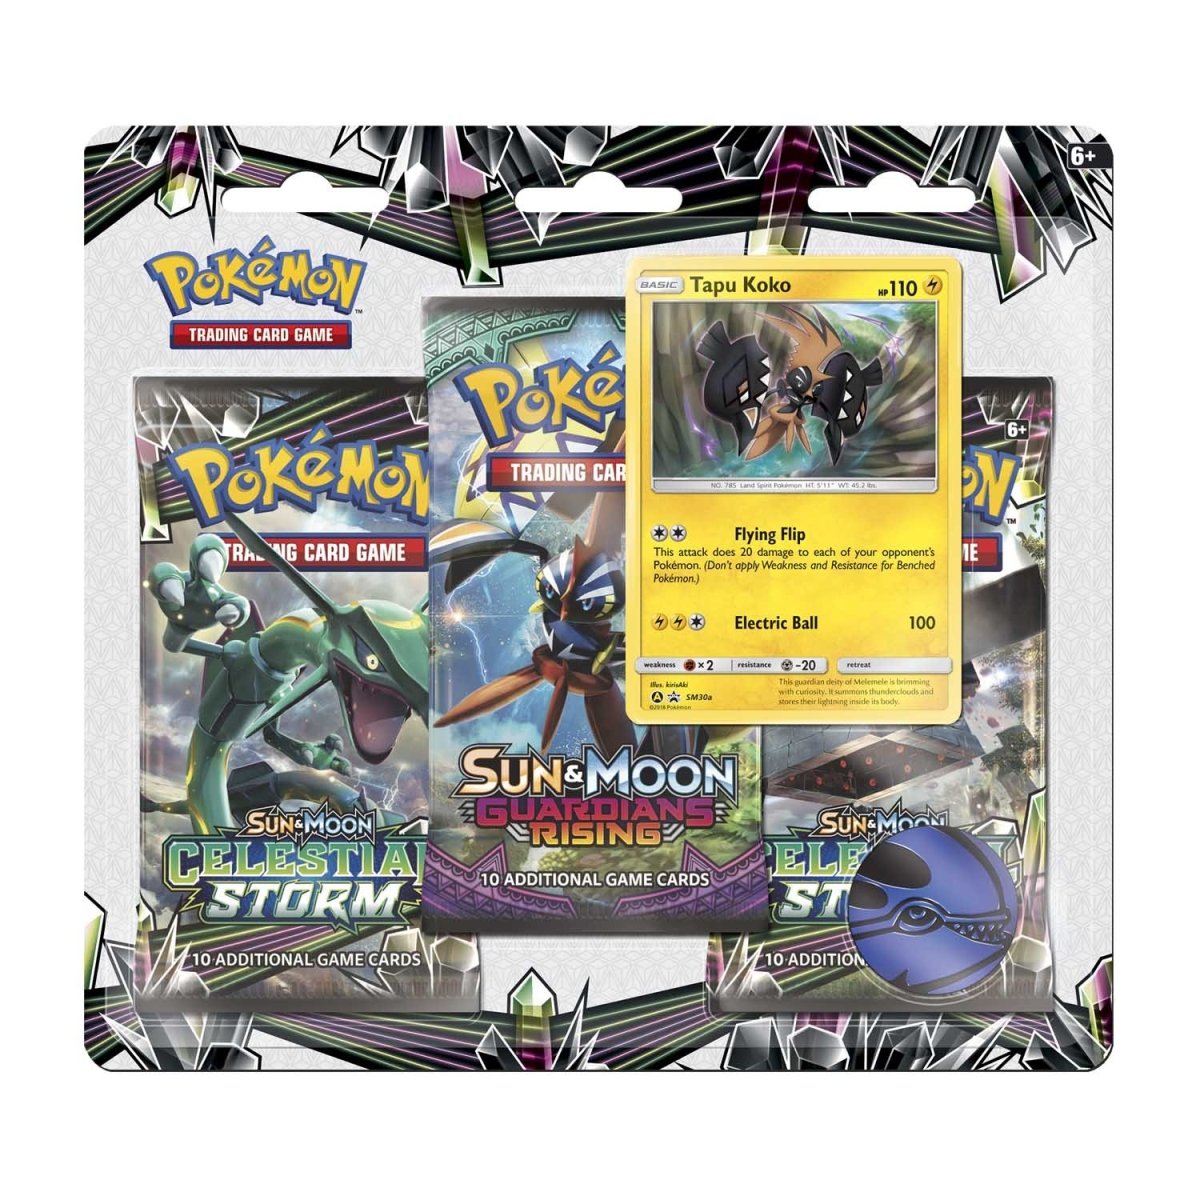 Pokémon Tapu Koko Box - POK80283 for sale online